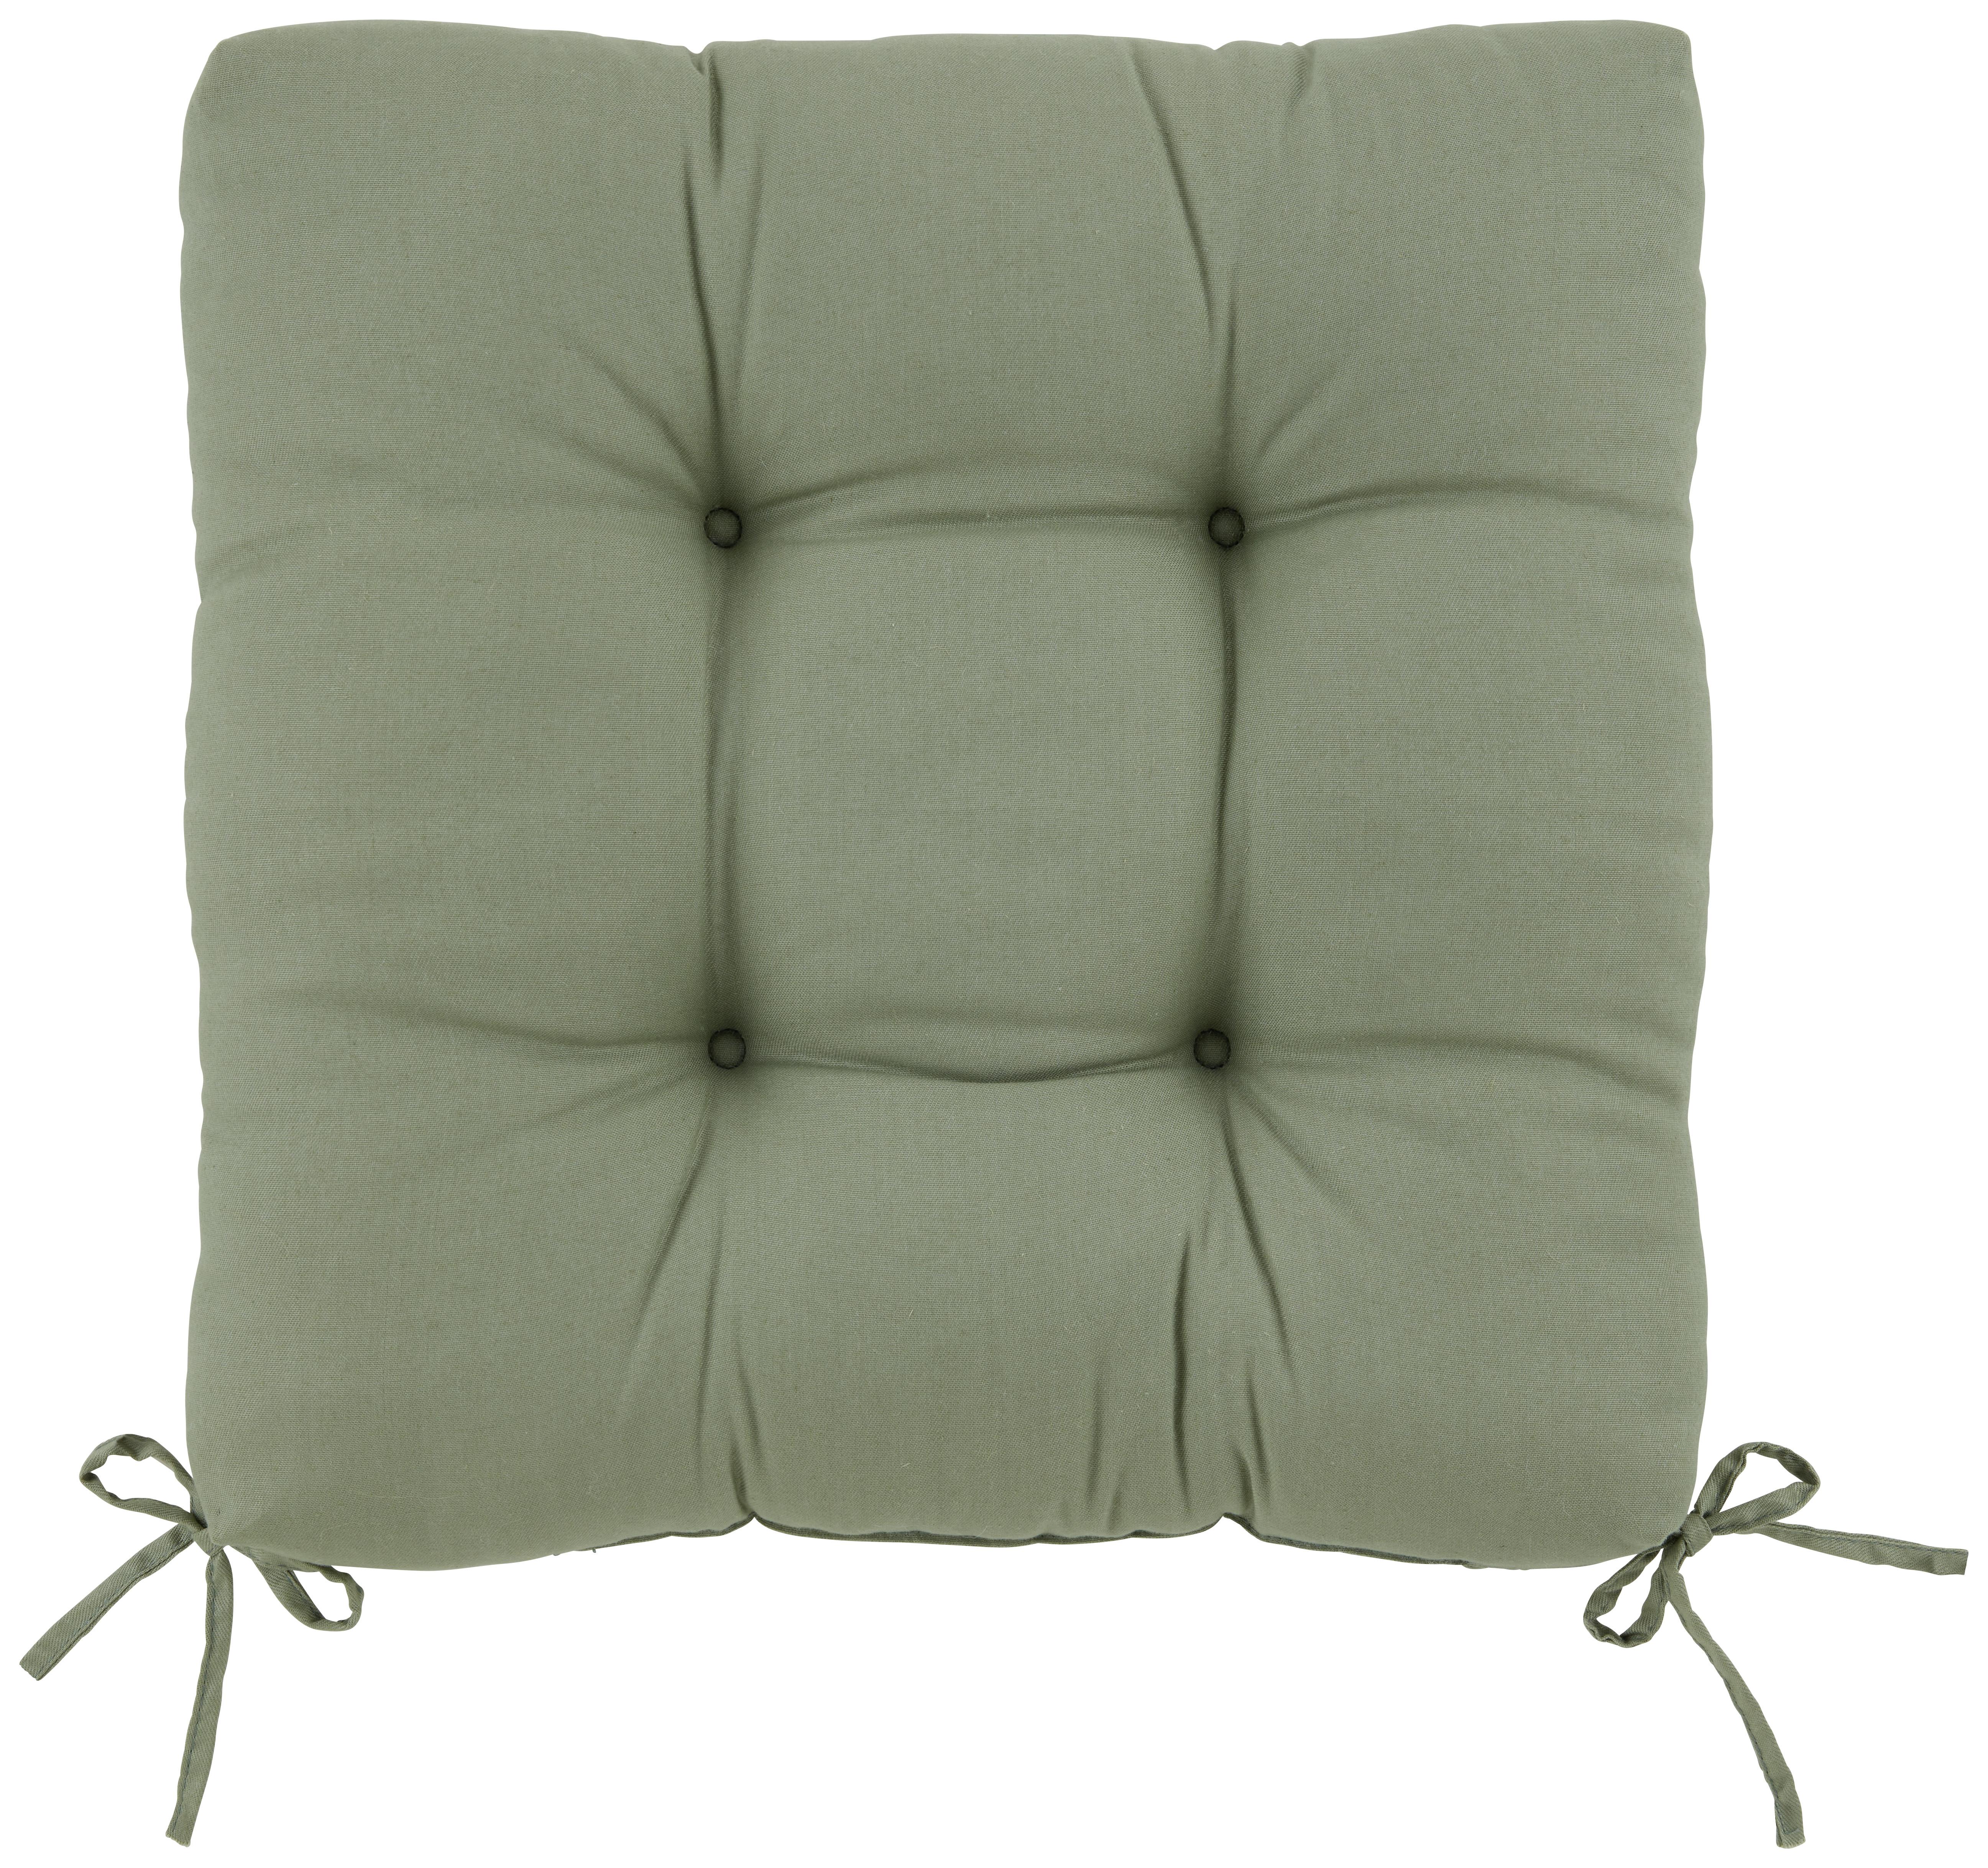 Poduška Na Sedenie Elli, 40x40cm - zelená, textil (40/40/7cm) - Modern Living